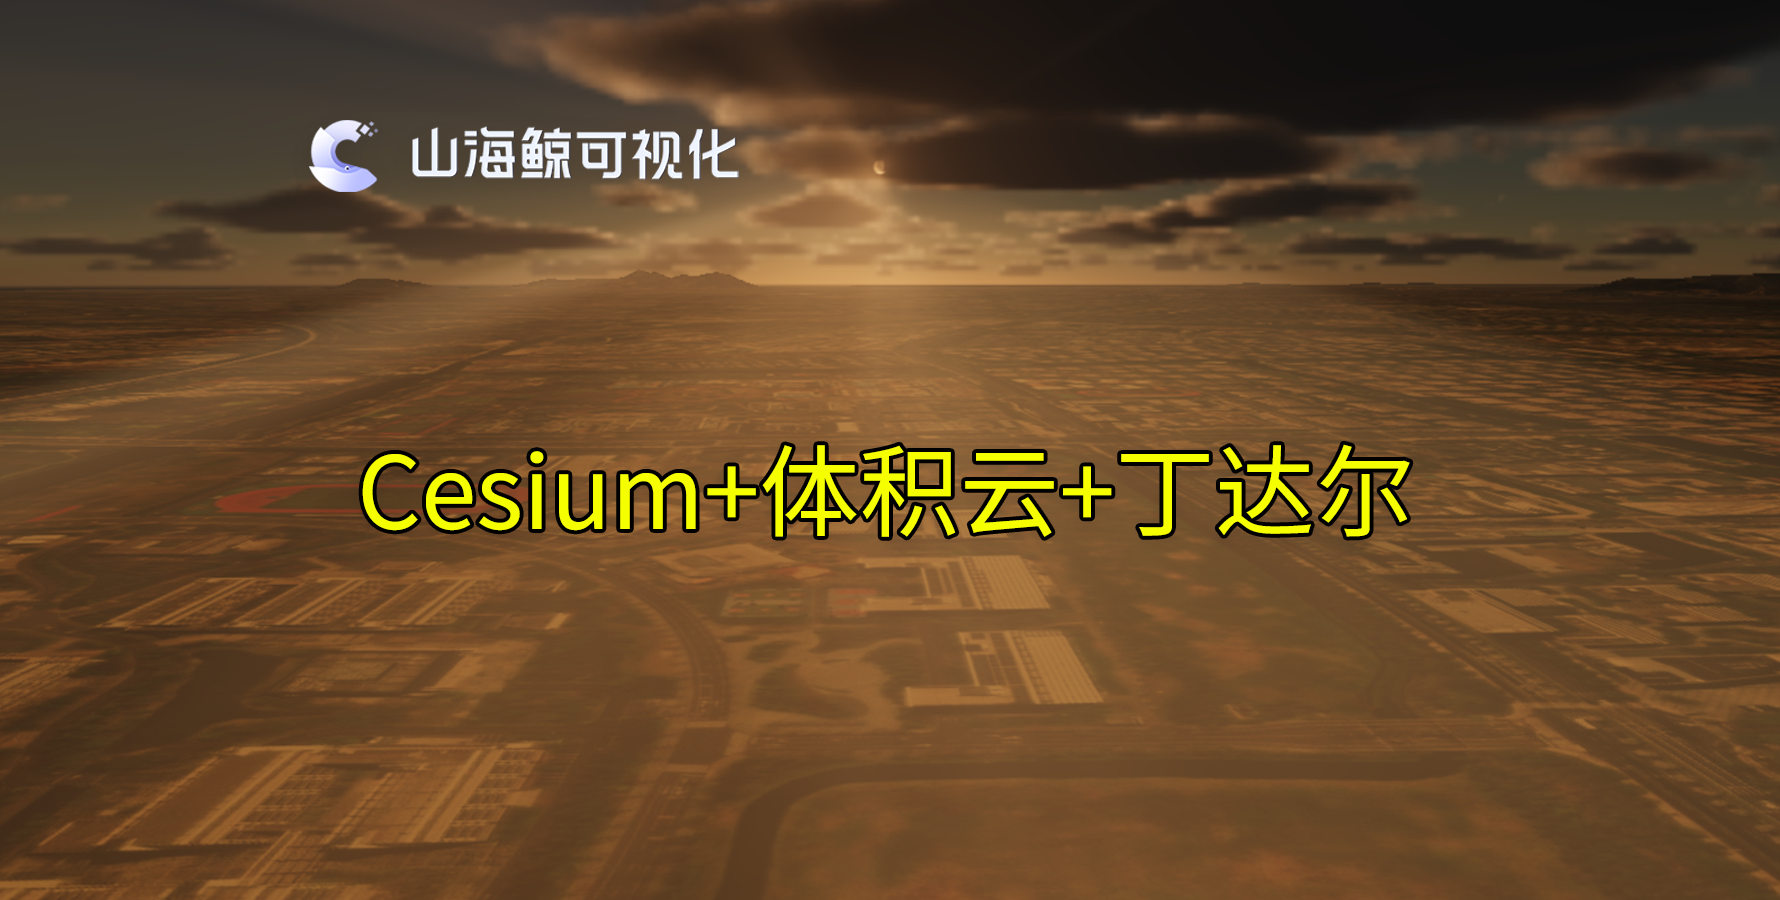 【功能演示】Cesium添加云层丁达尔效应